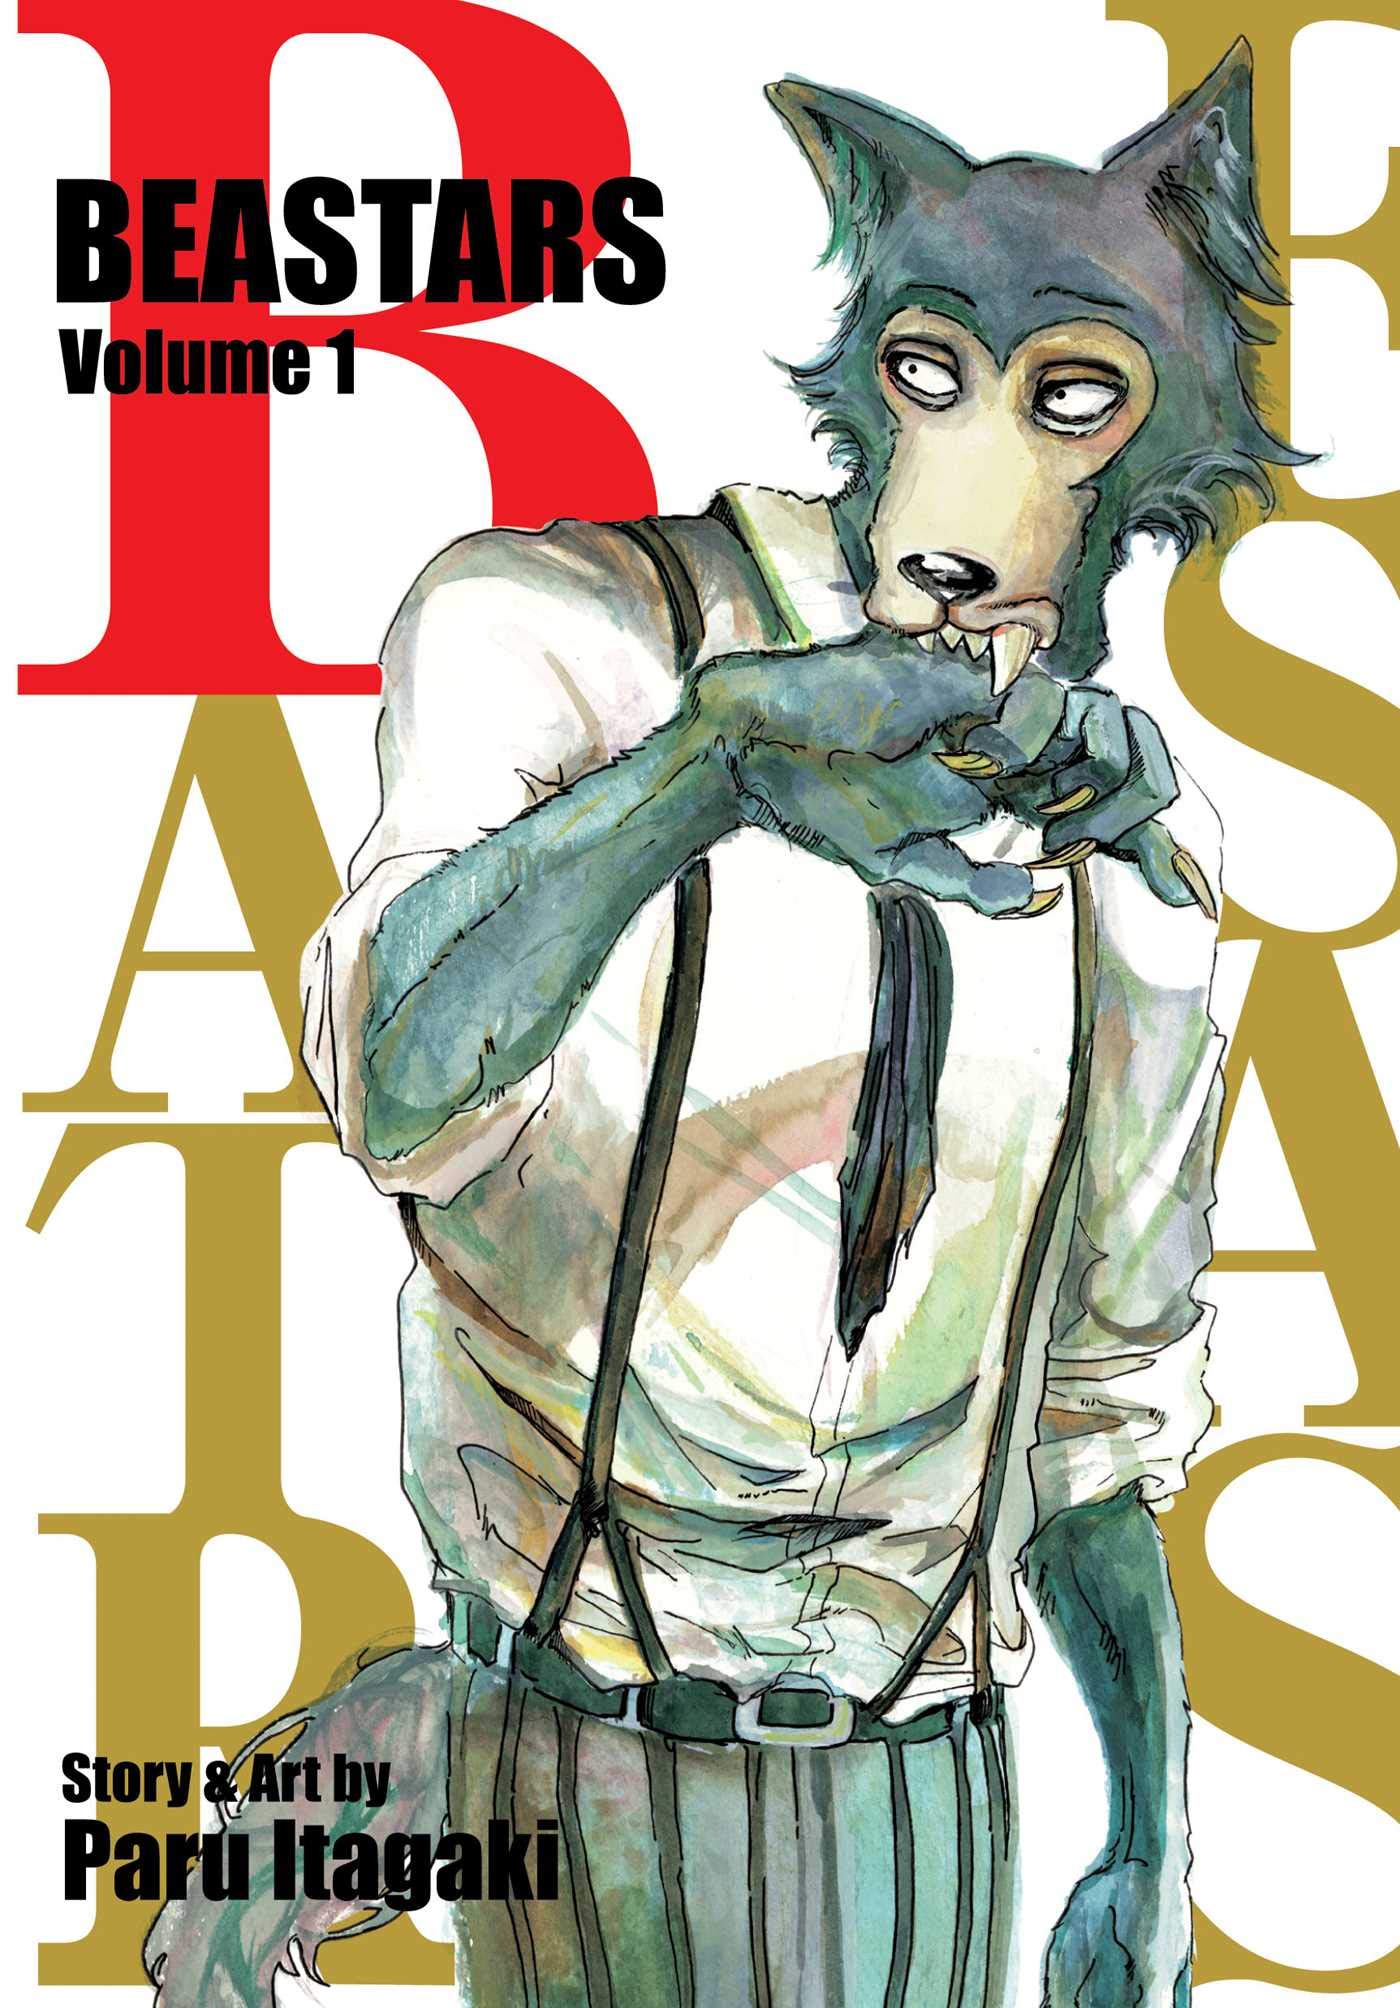 Beastars - Volume 1 | Paru Itagaki image